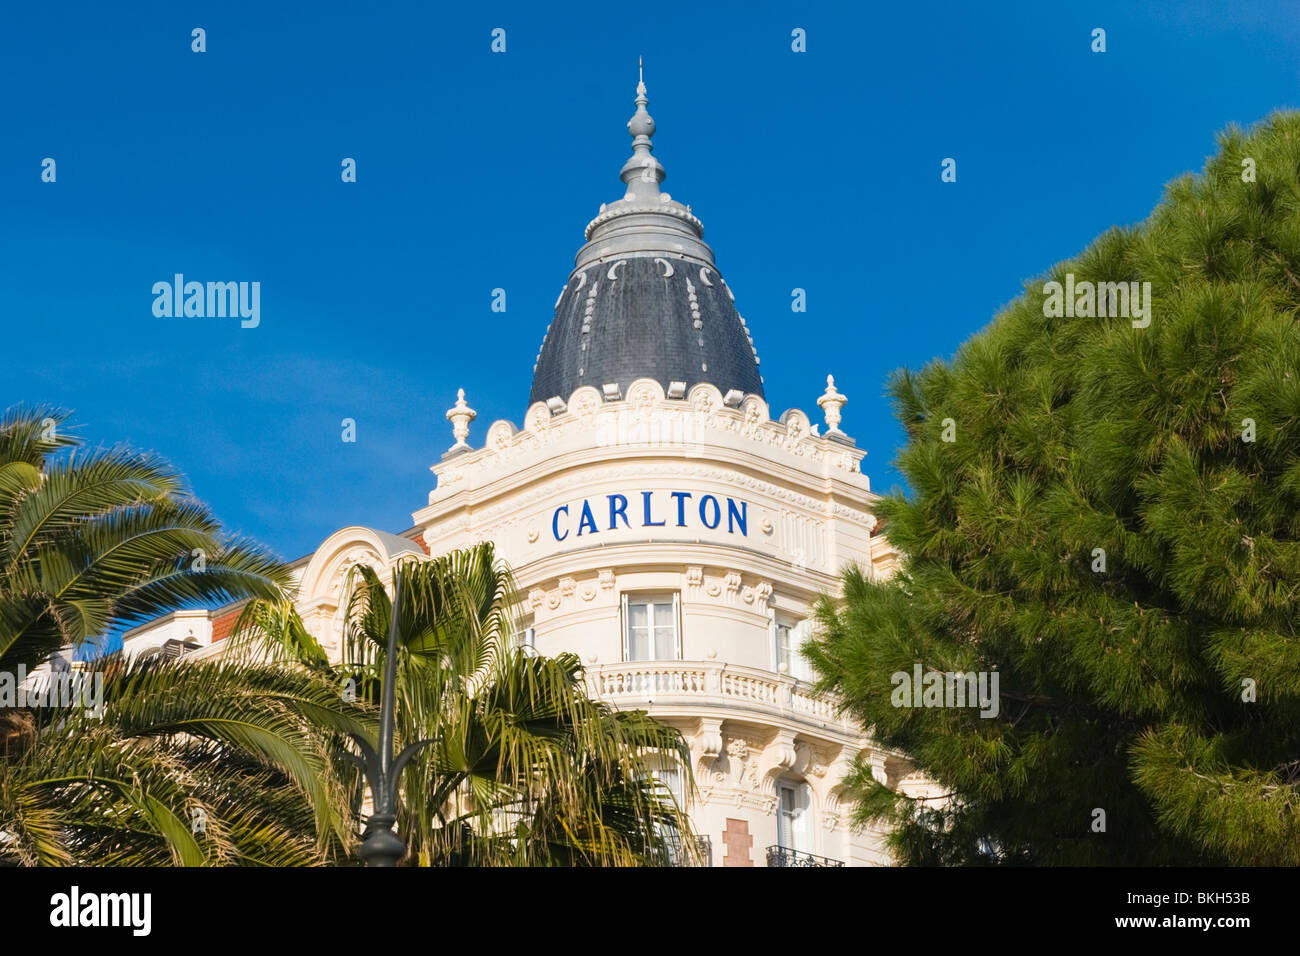 Cannes , La Croisette , vista di dettaglio del Carlton Hotel Inter Continental attraverso gli alberi & palme Foto Stock